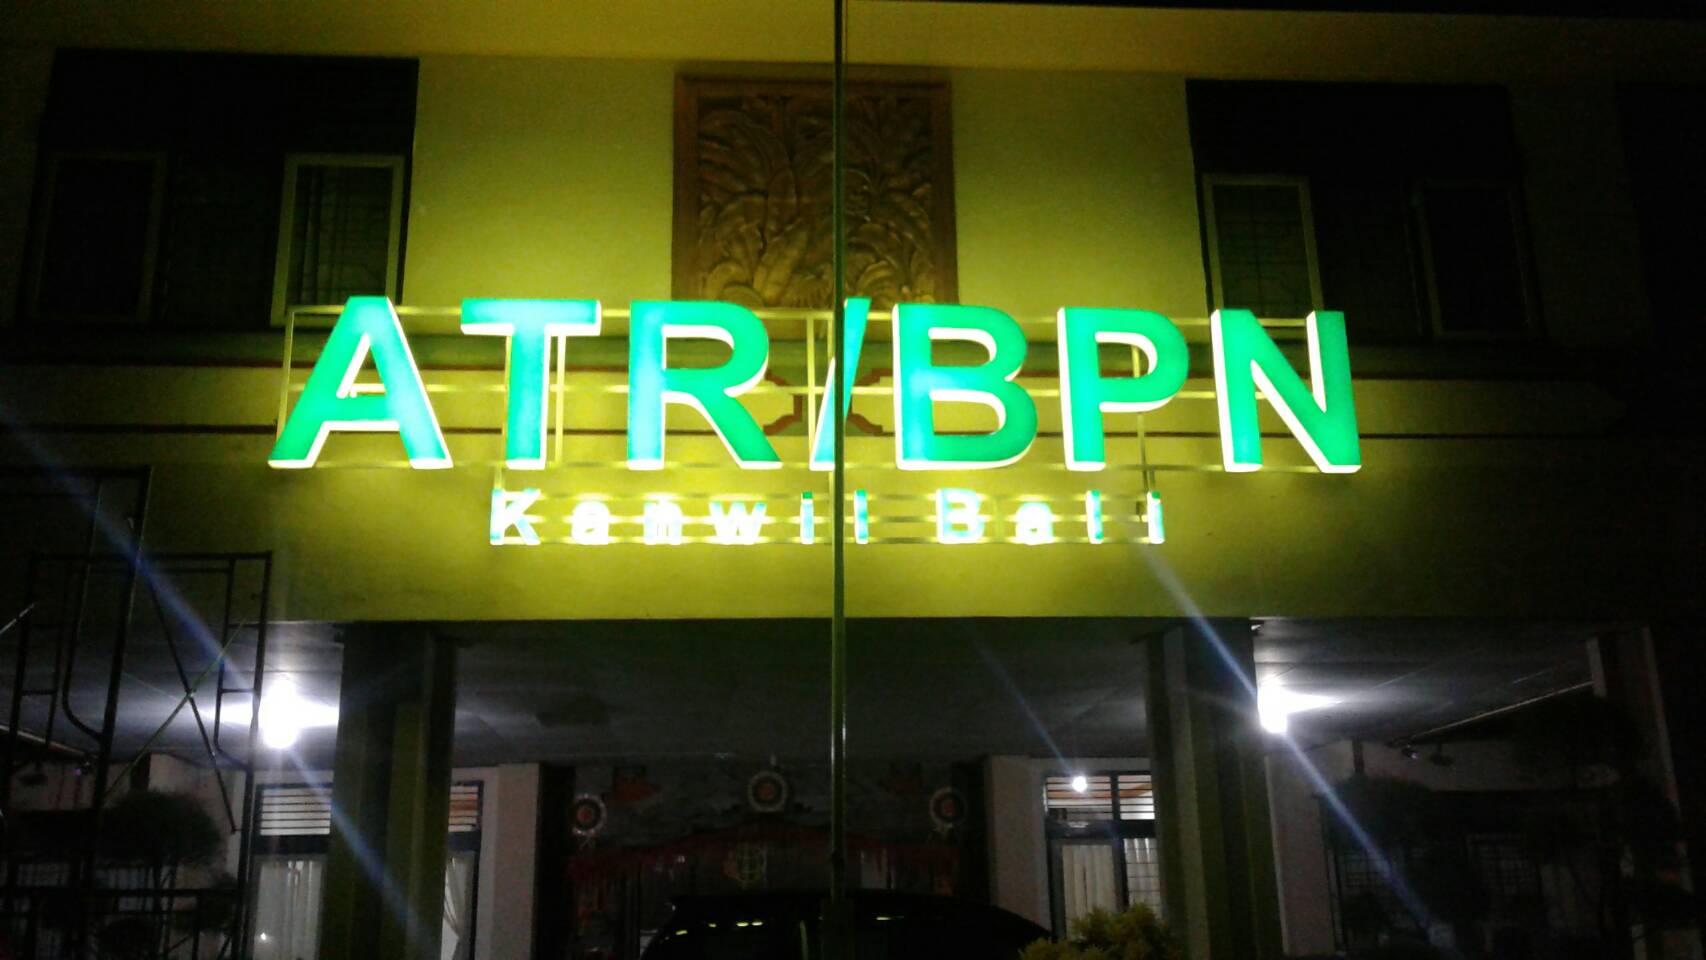 ATR / BTN Kanwil Bali